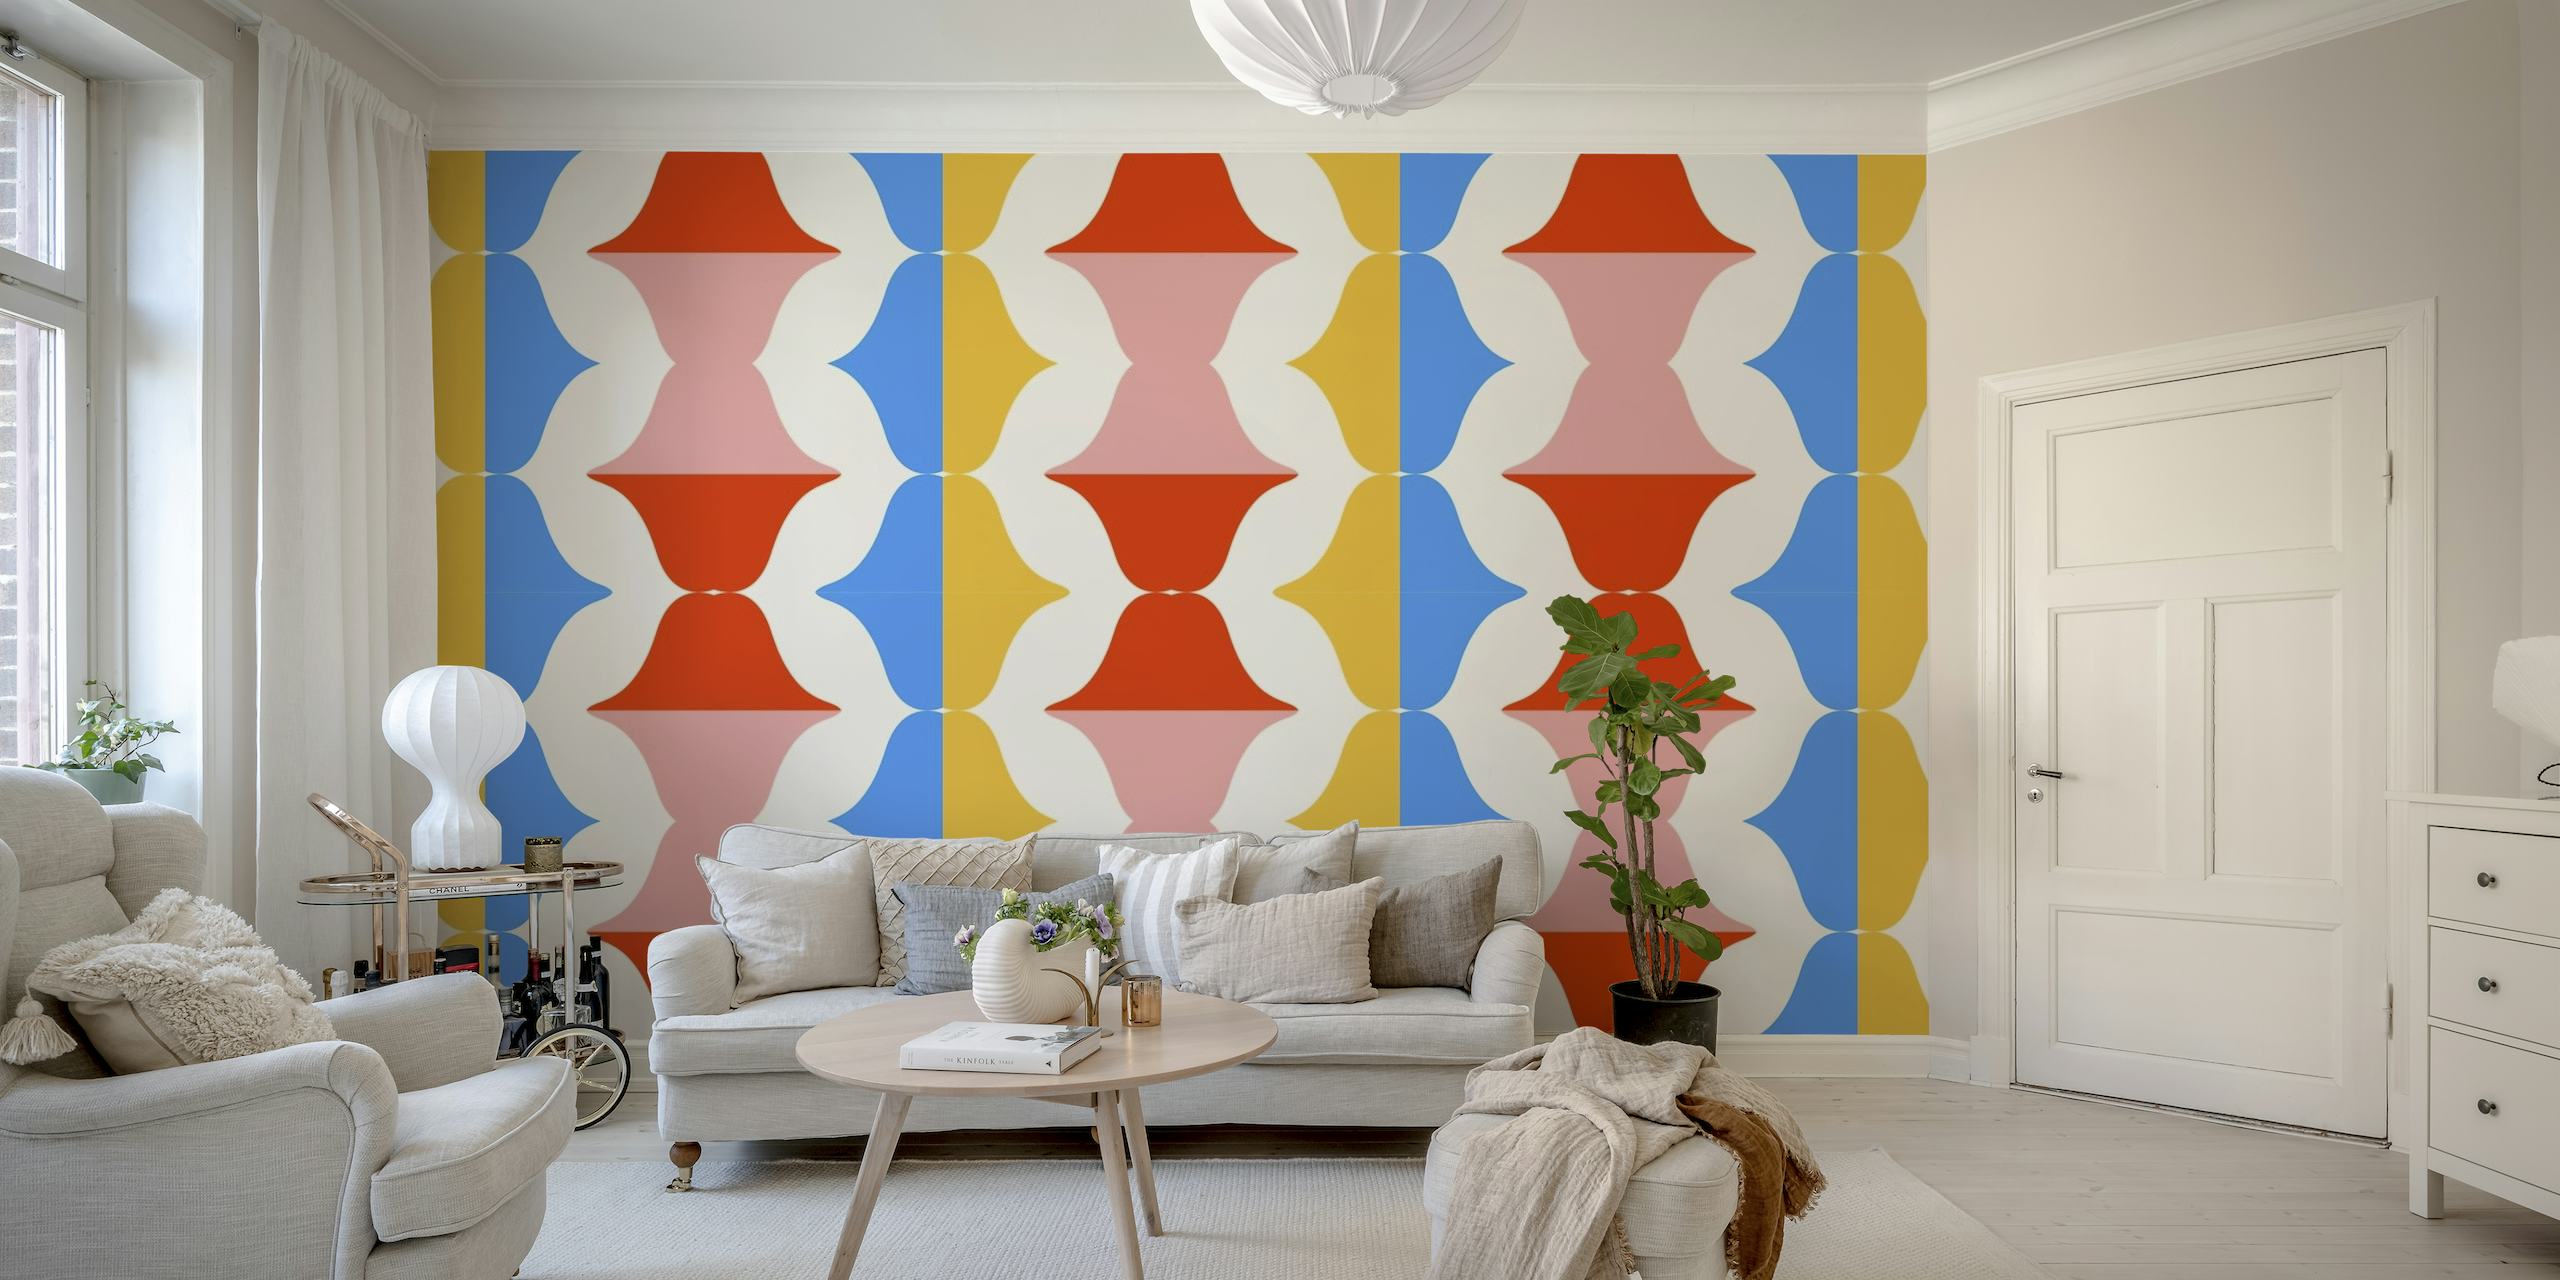 Retro-geïnspireerde muurschildering met lippenpatroon in pop-artstijl op een geometrische blauwe, oranje en roze achtergrond.